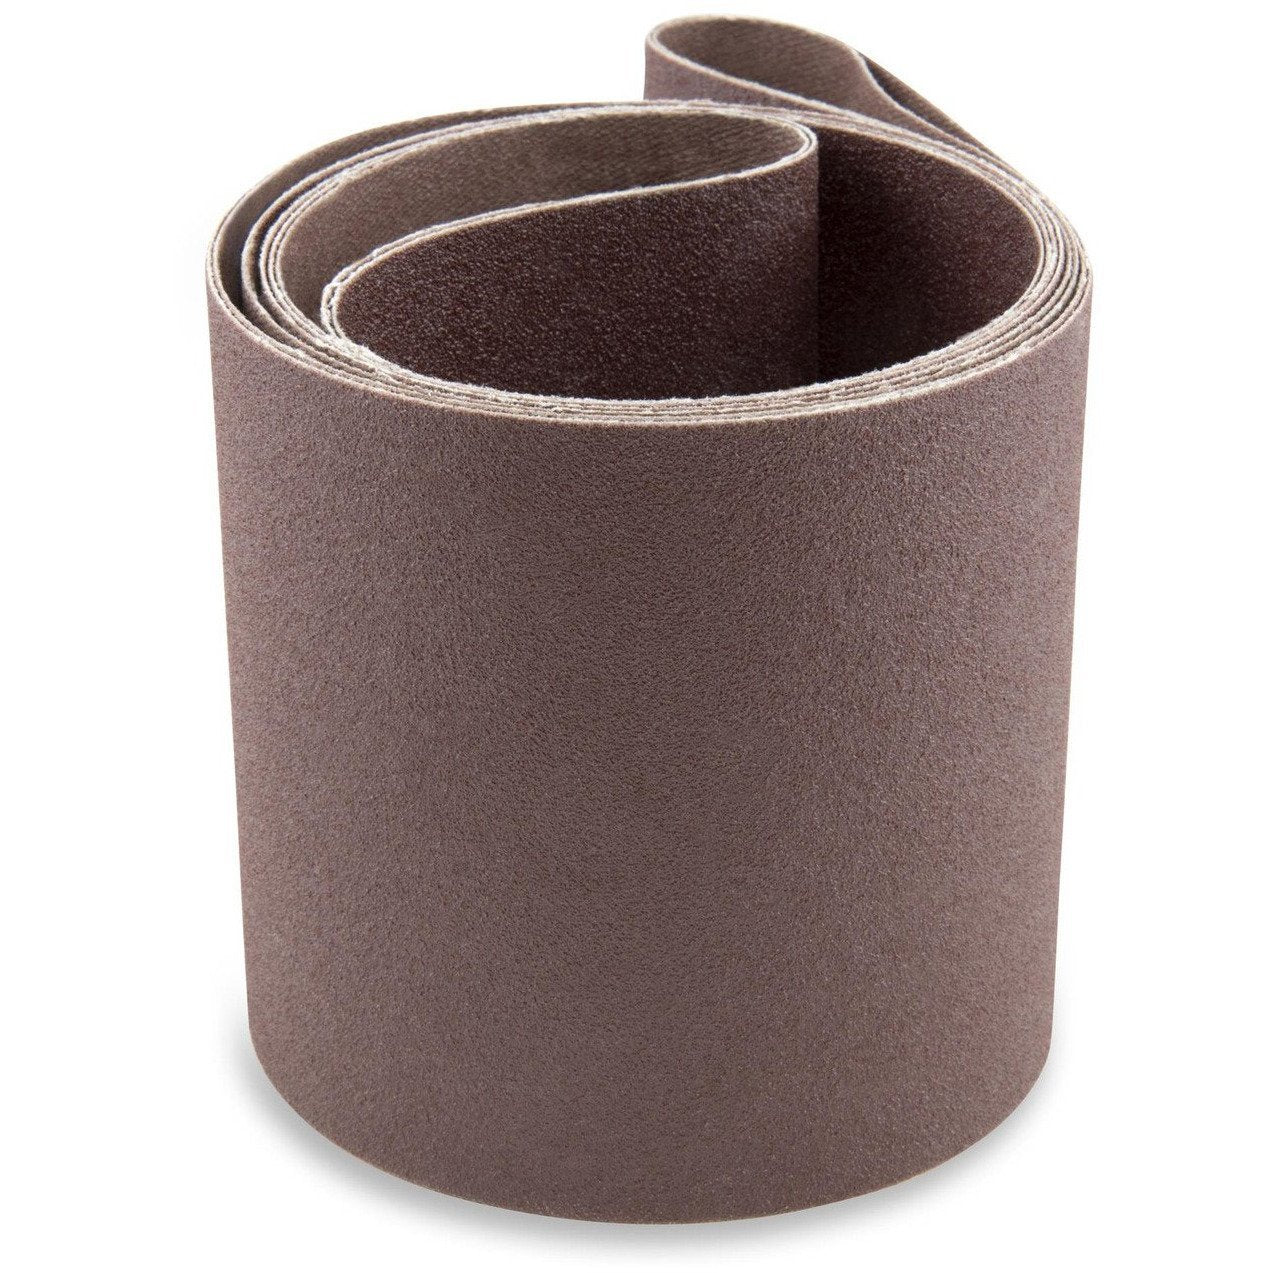 2 1/2 X 48 Inch Aluminum Oxide Metal Sanding Belts, 6 Pack - Red Label Abrasives